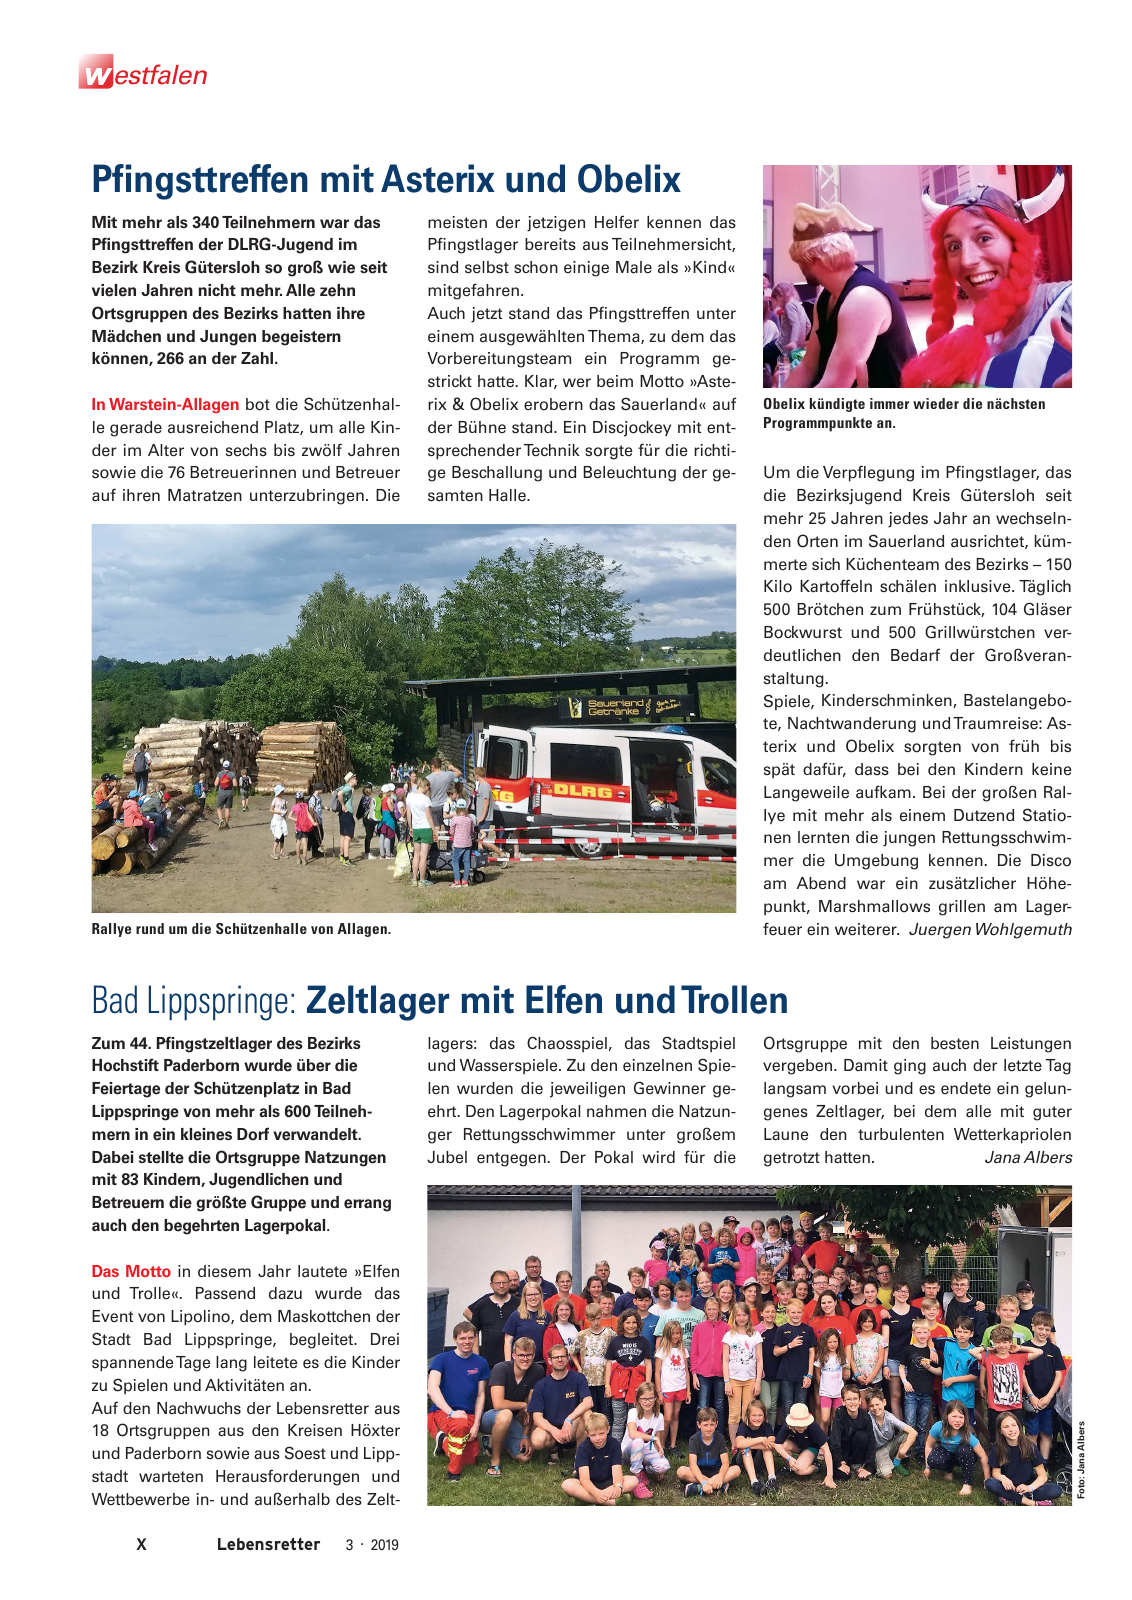 Vorschau Lebensretter 3/2019 - Westfalen Regionalausgabe Seite 12